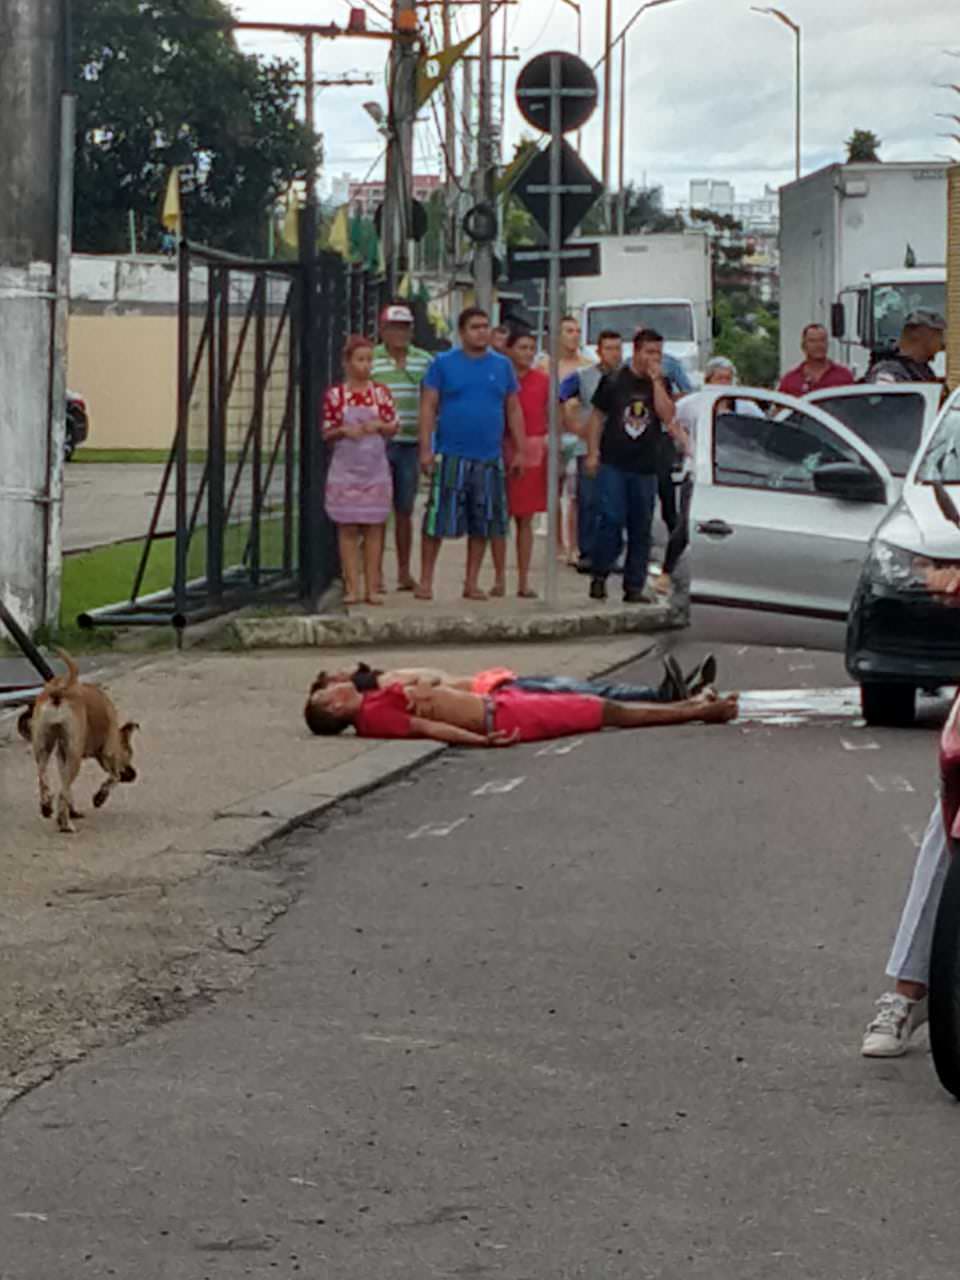 Perseguição policial e troca de tiros deixa dois mortos em Manaus